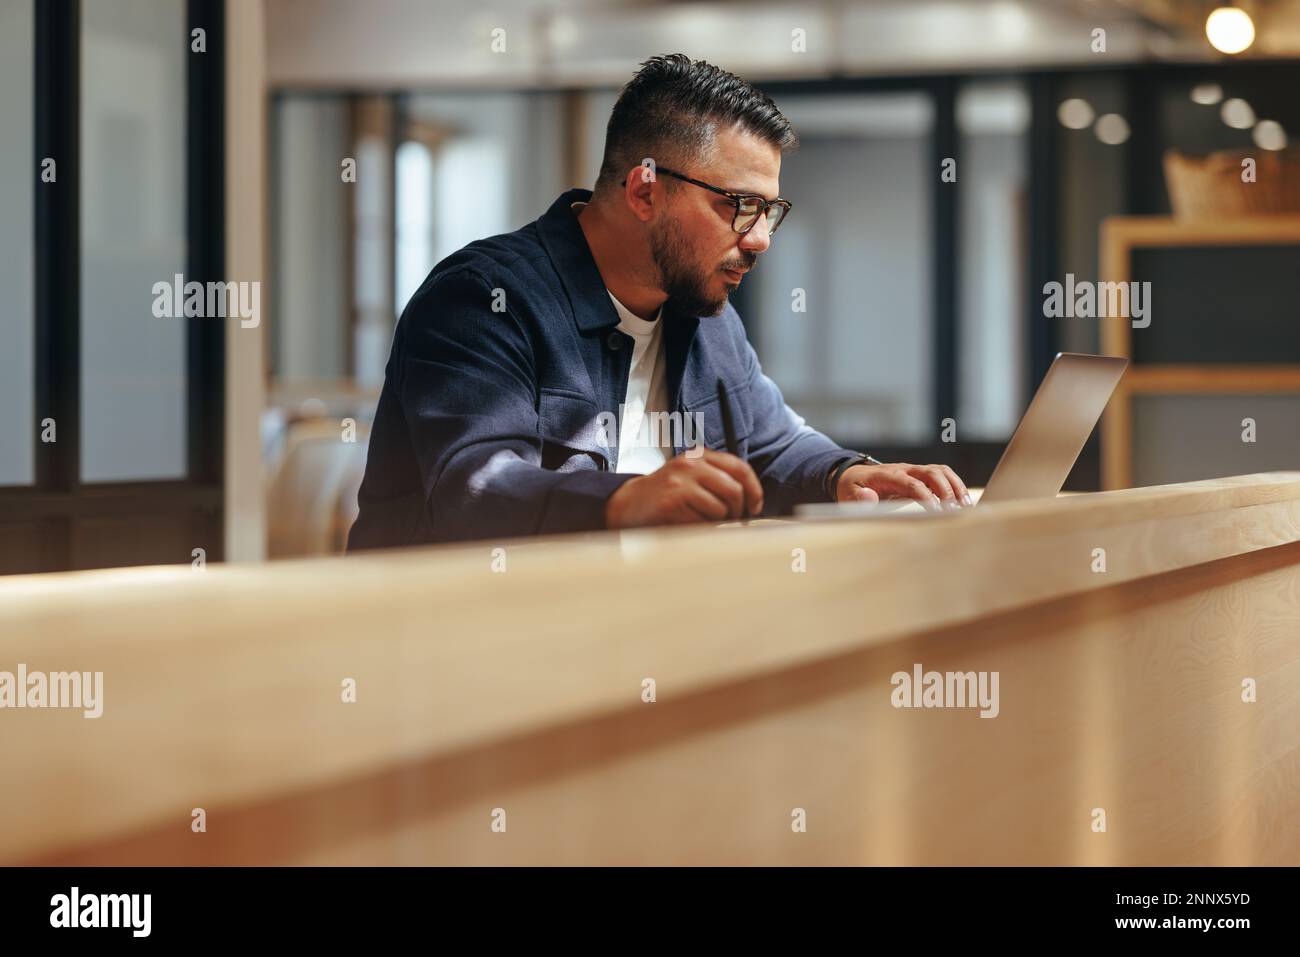 Graphiste travaillant sur un ordinateur portable dans un bureau de collègue. Homme d'affaires créatif qui dessine un nouveau design sur une tablette graphique. Concevoir un travail professionnel Banque D'Images